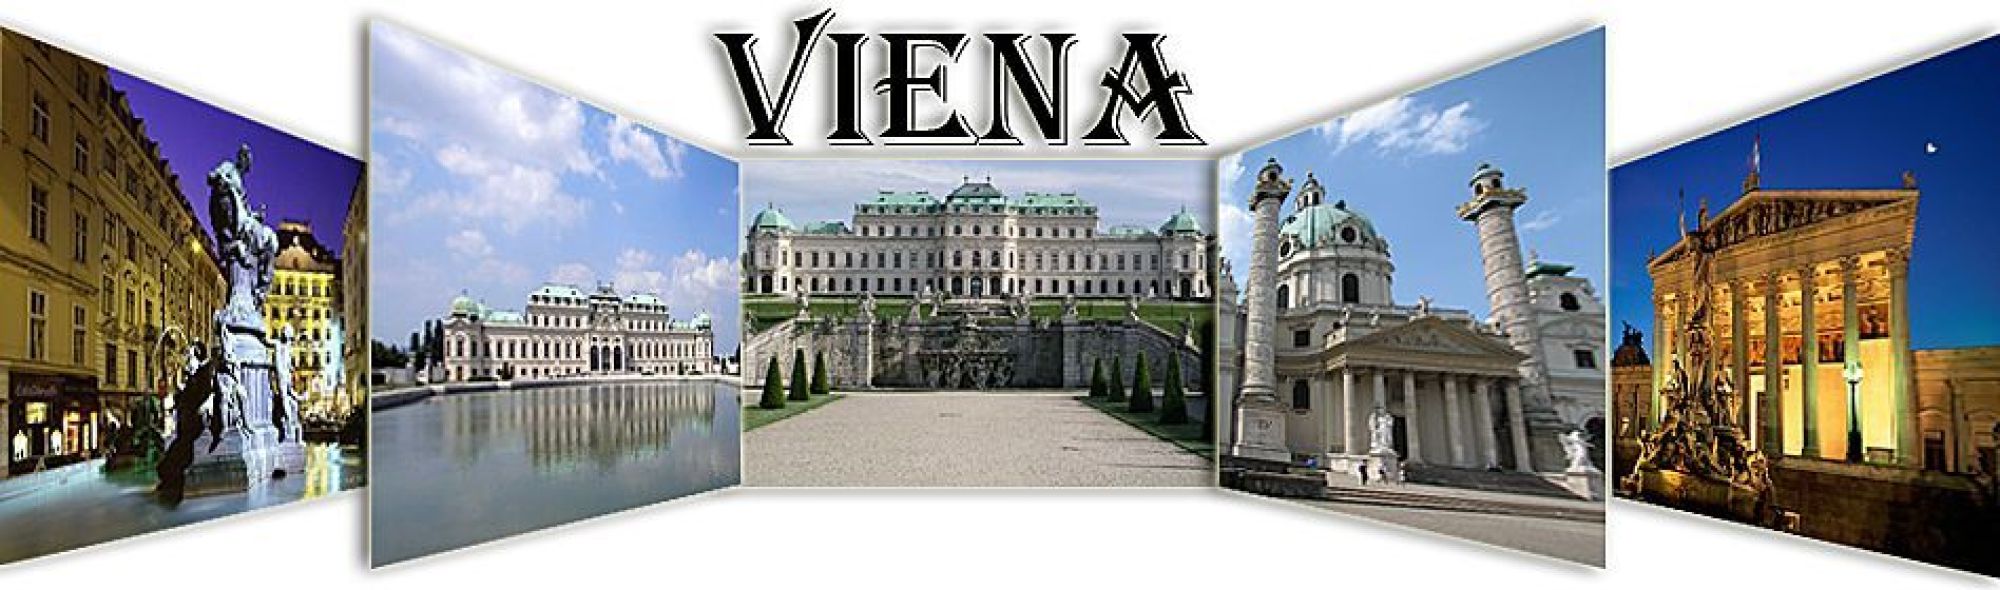 Oferta Viena